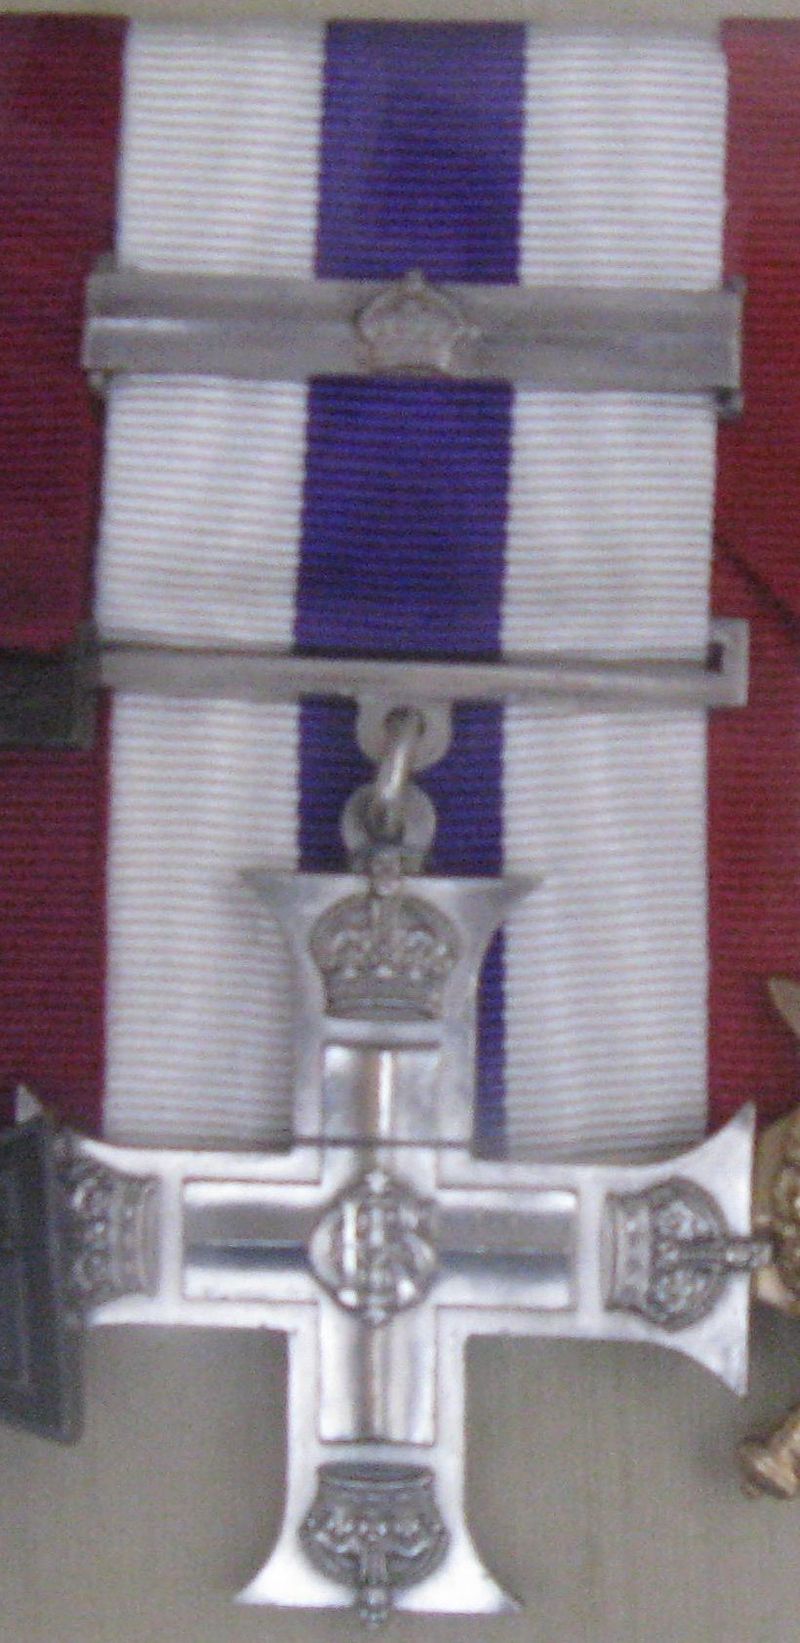 Der zweite Weltkrieg • Ver Tema - Medallas y condecoraciones británicas